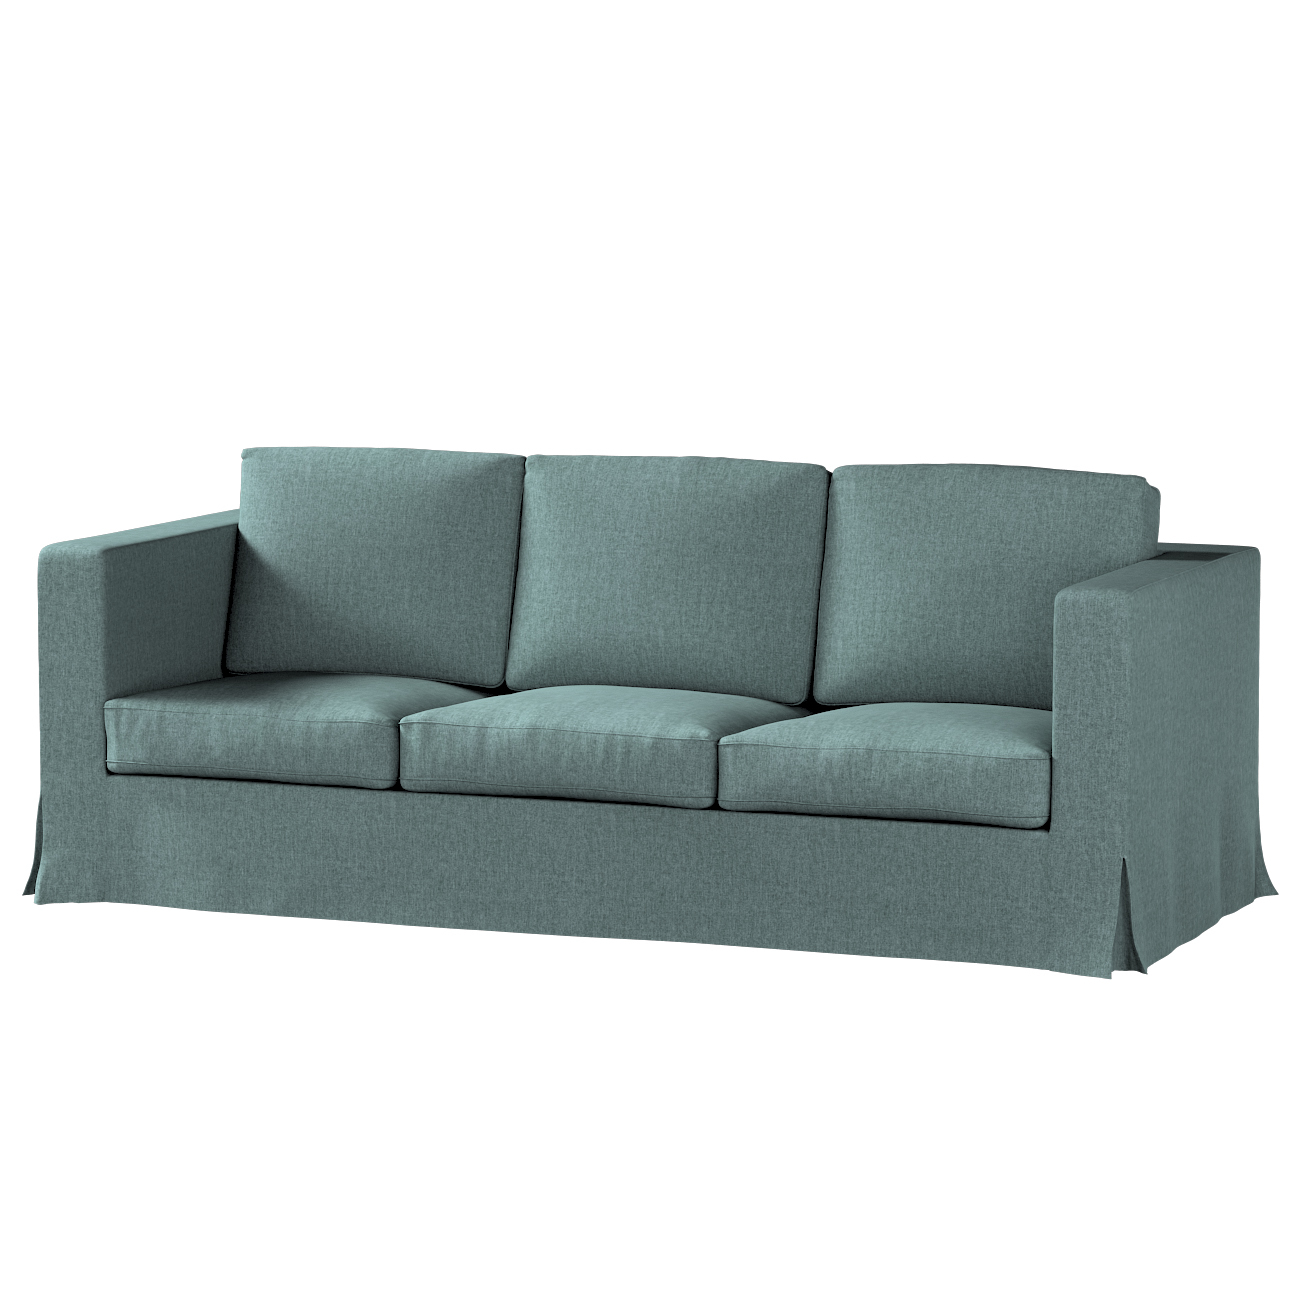 Bezug für Karlanda 3-Sitzer Sofa nicht ausklappbar, lang, grau- blau, Bezug günstig online kaufen